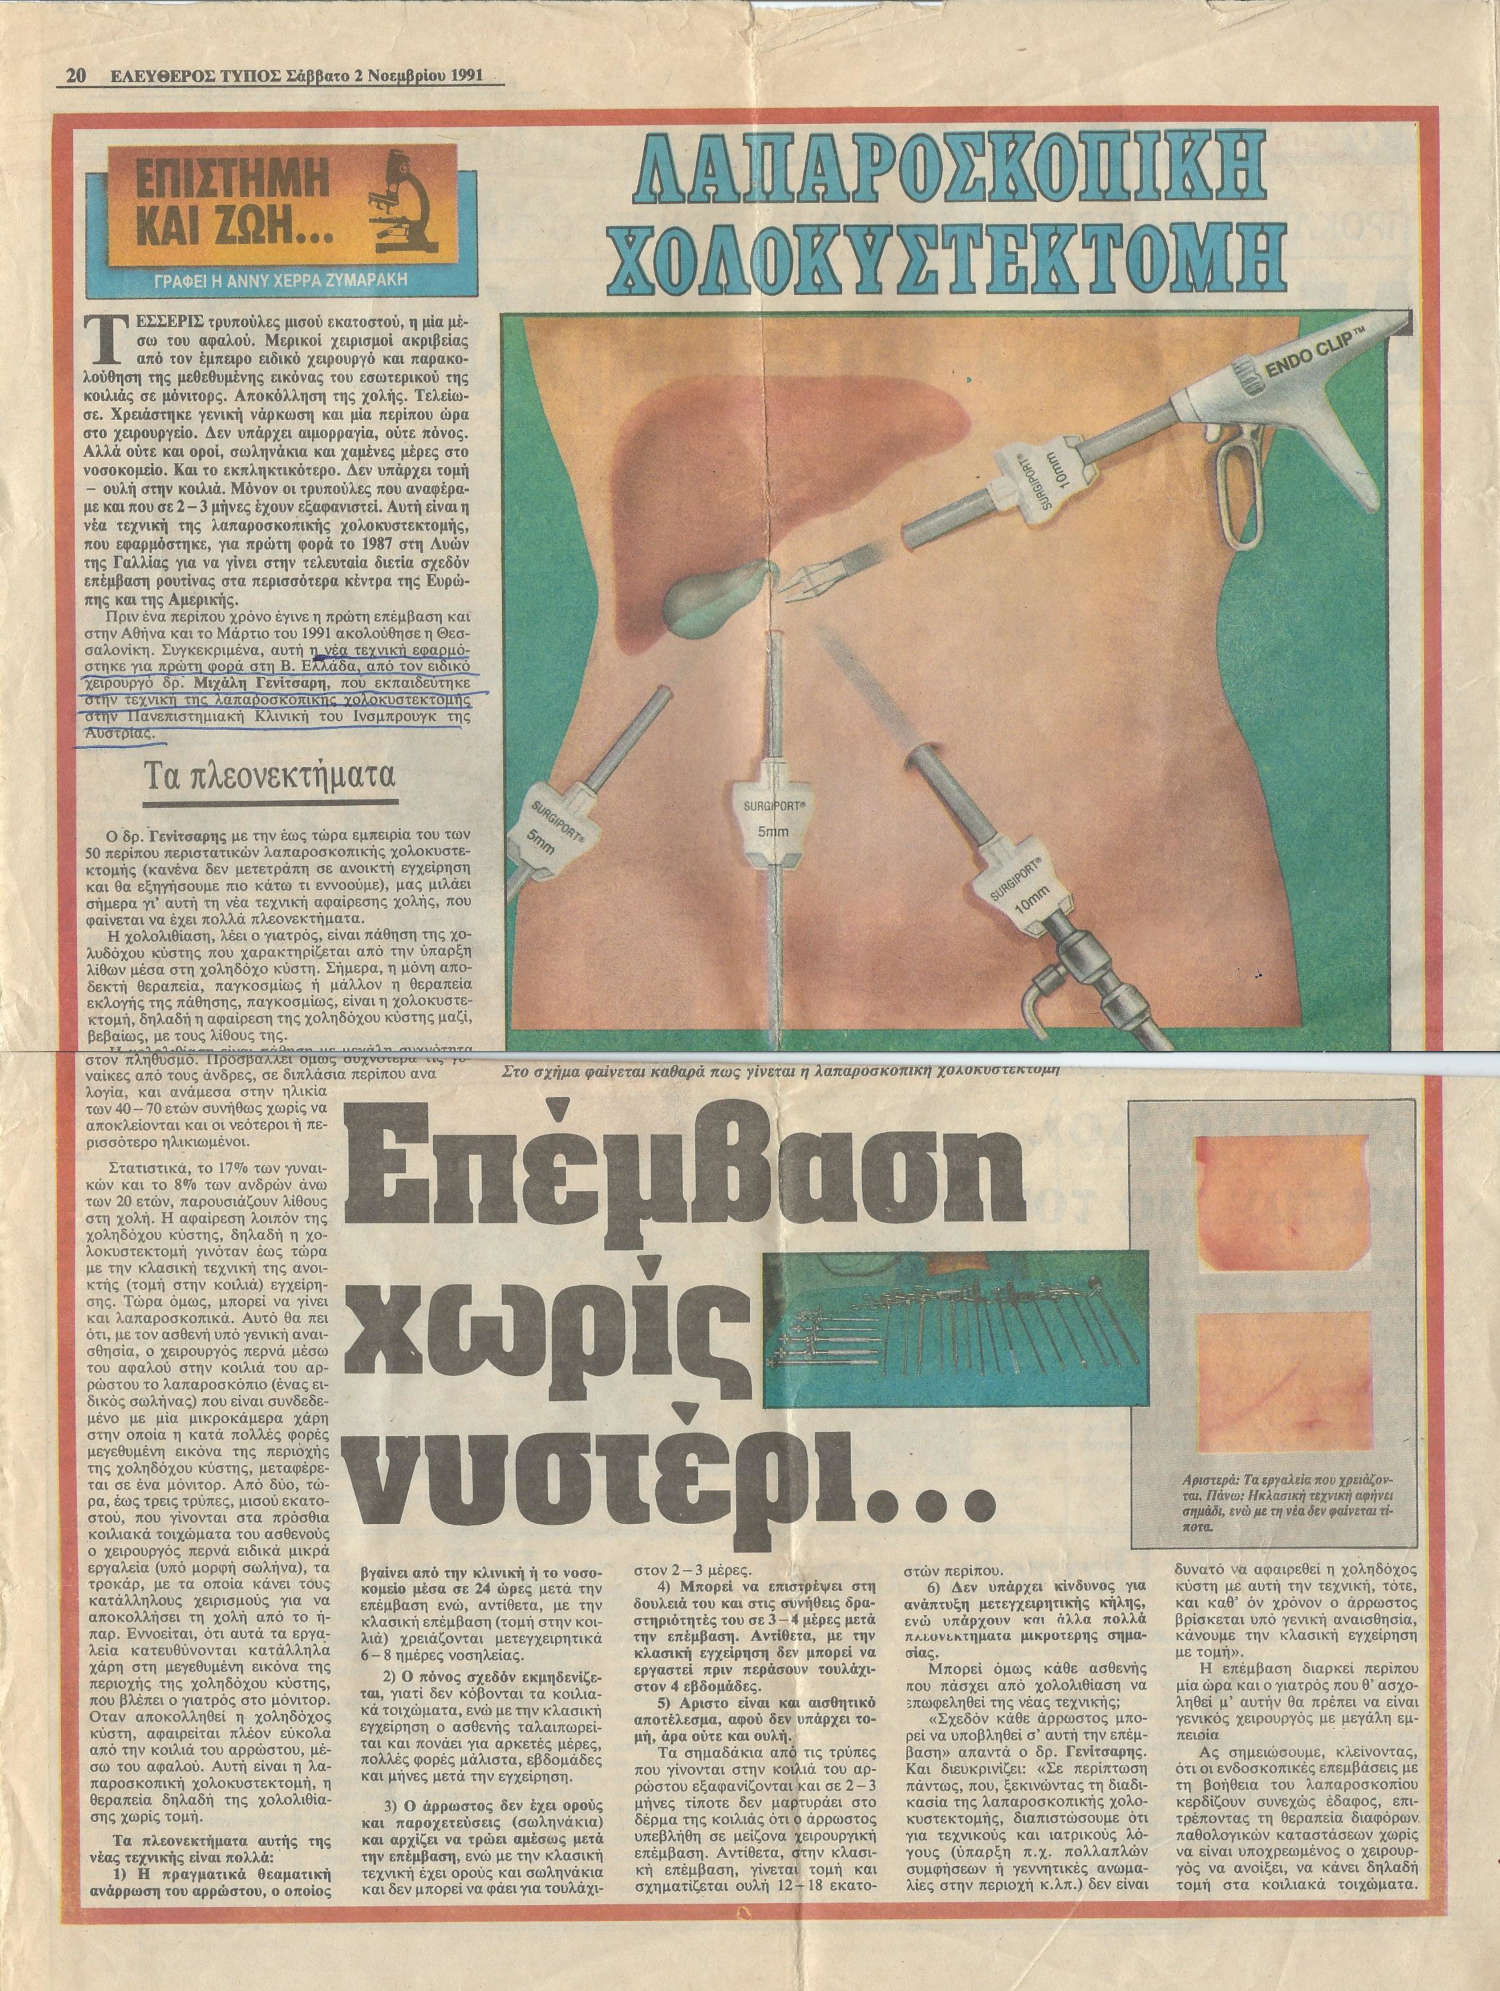 Λαπαροσκοπική Χολοκυστεκτομή - «Ελεύθερος Τύπος», 2 Νοεμβρίου 1991